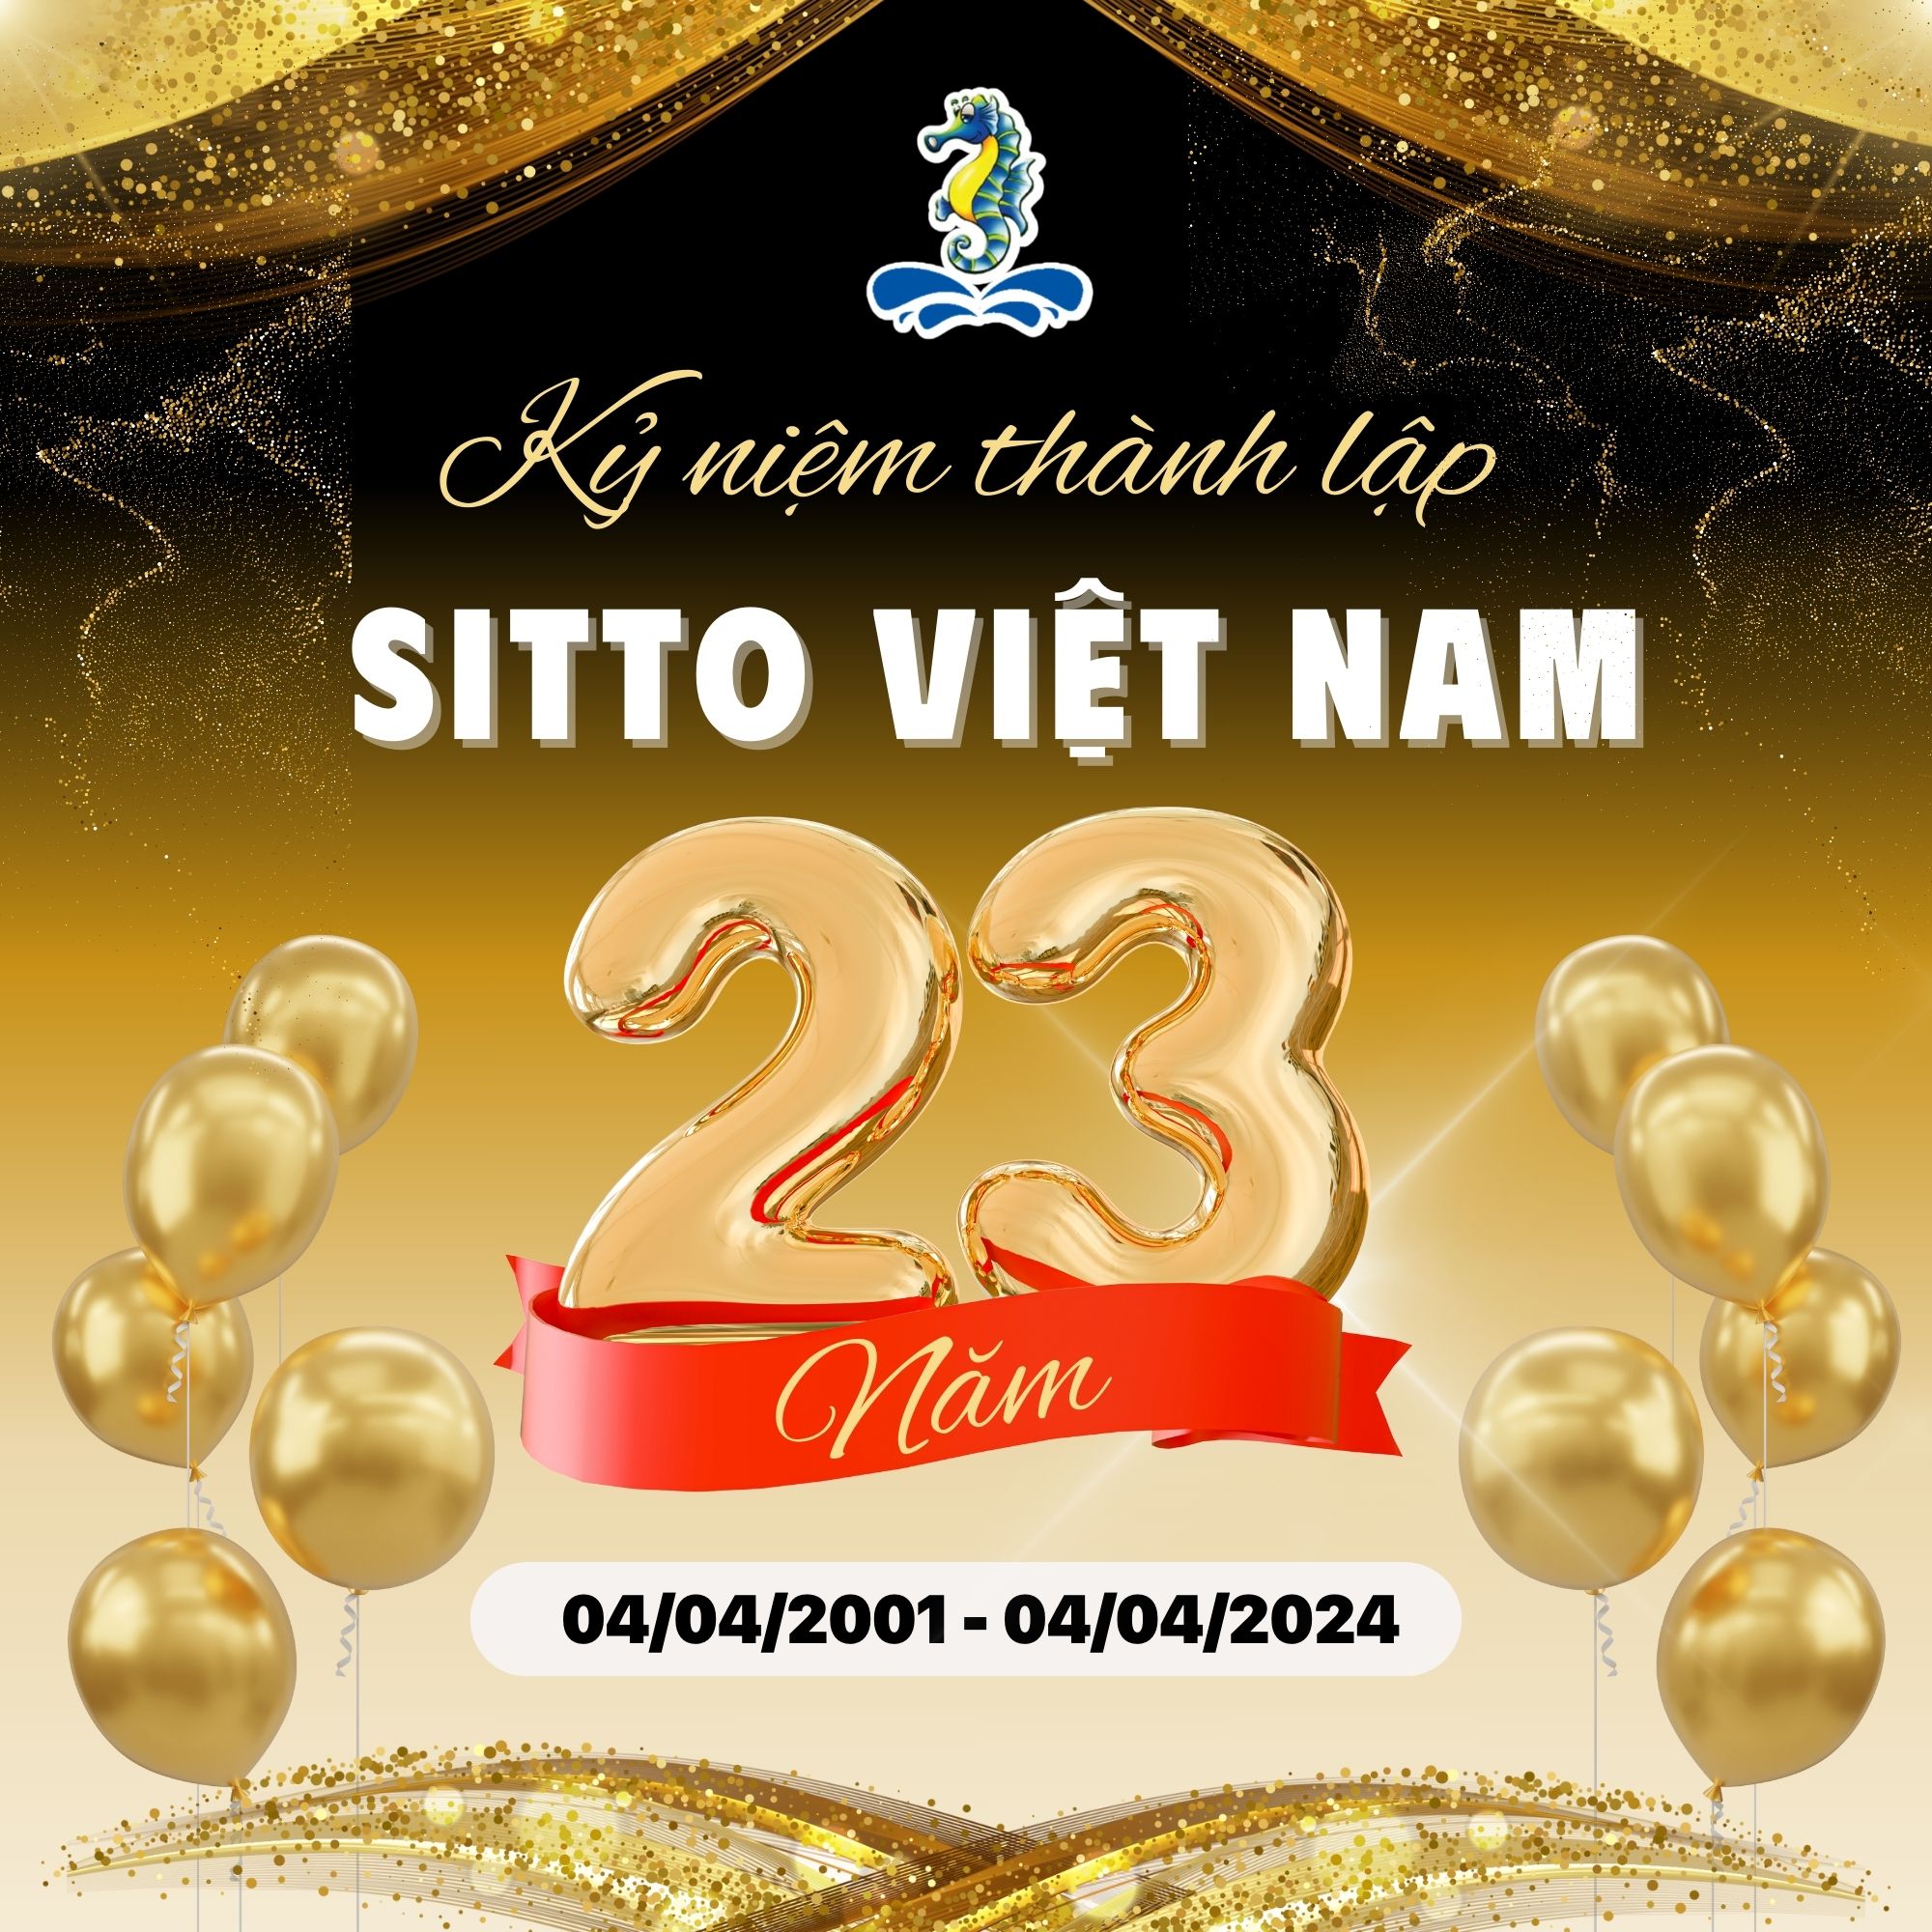 Kỷ niệm 23 năm thành lập công ty Sitto Việt Nam